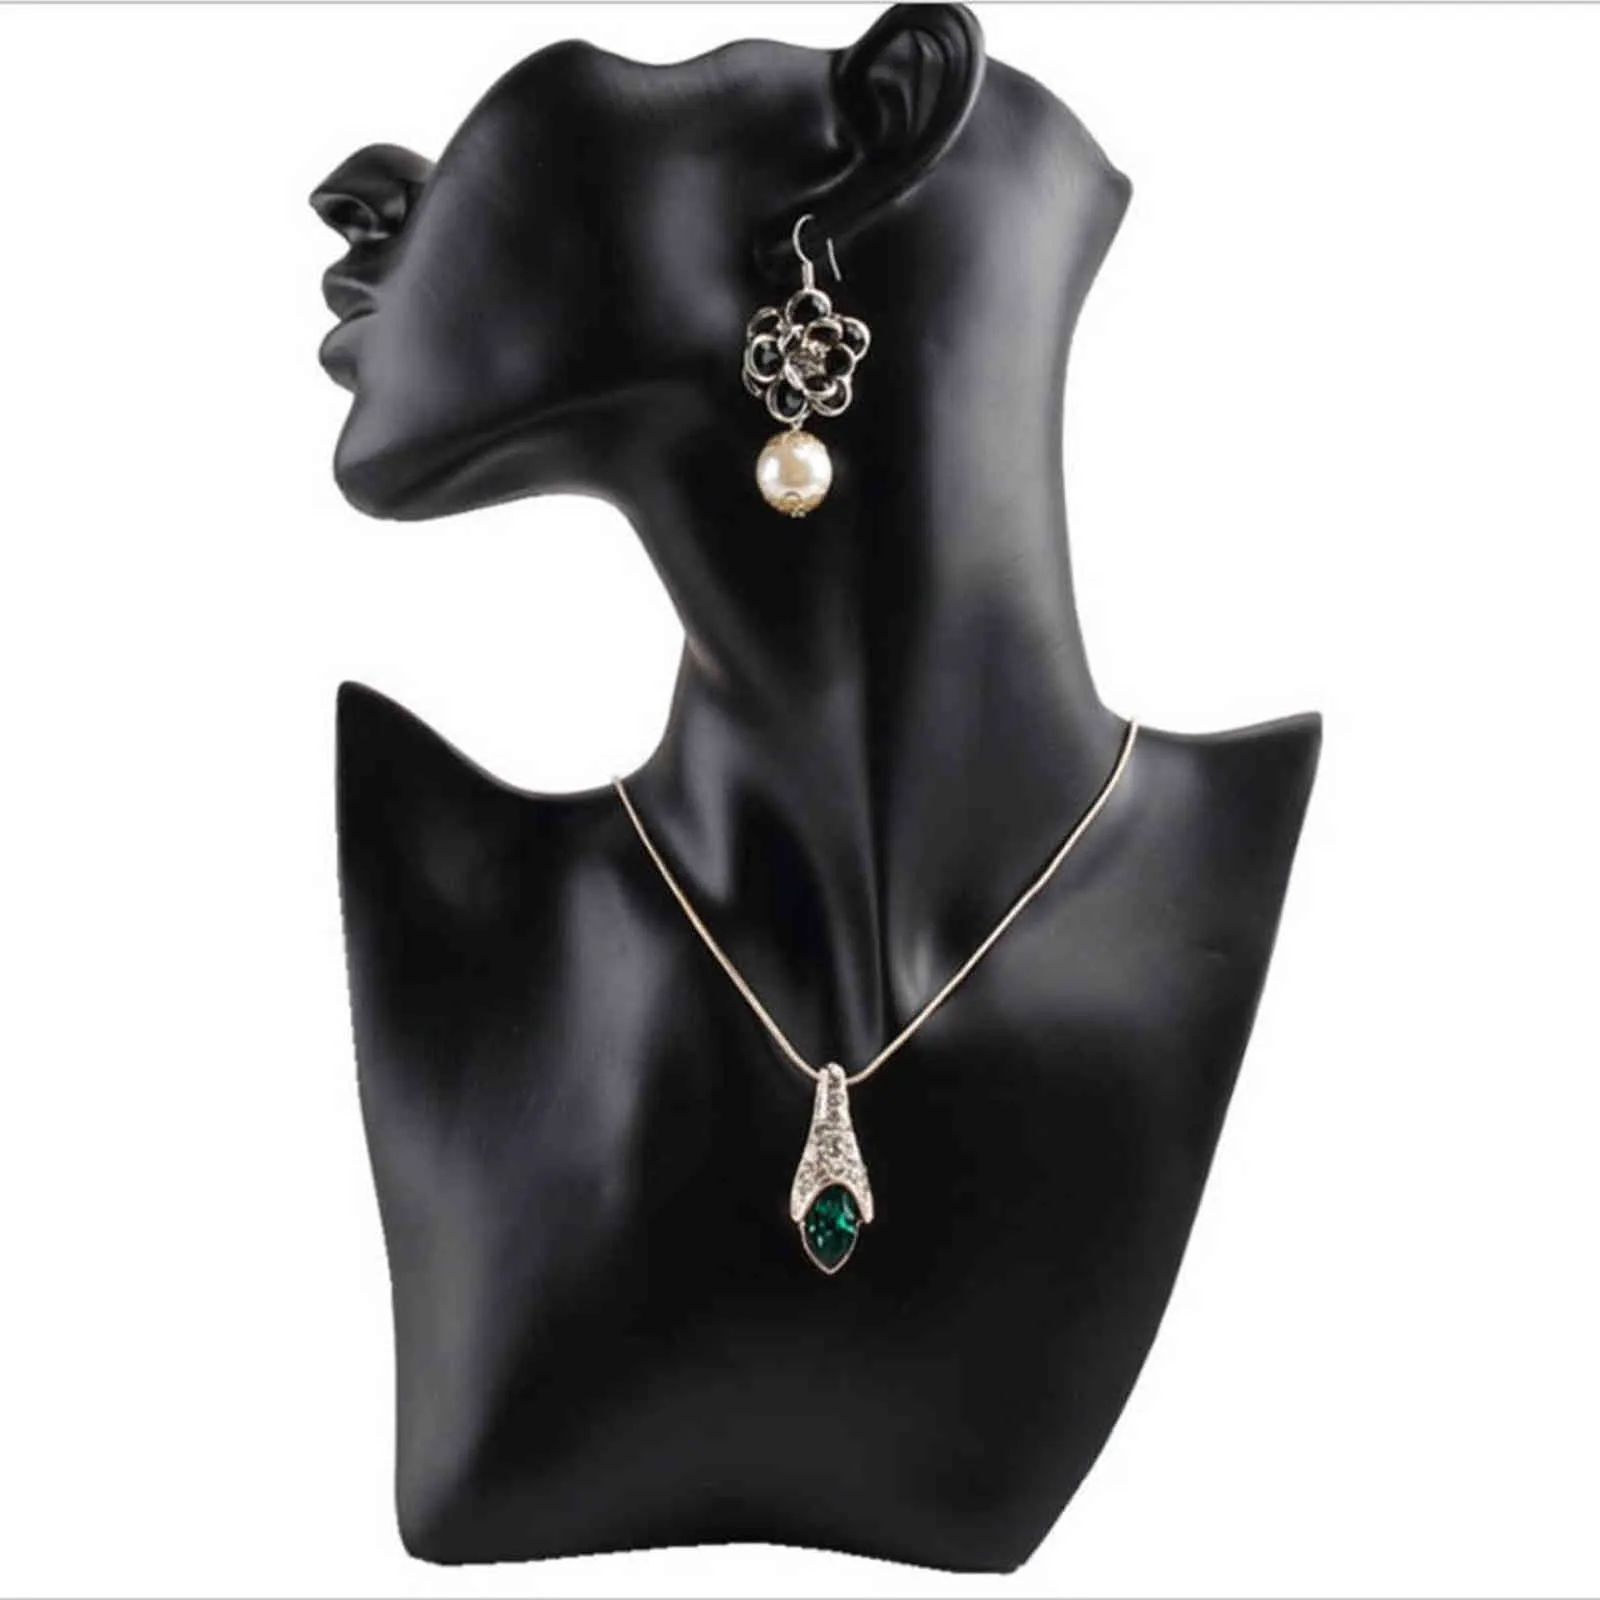 Maniquí femenino elegante de material de resina negra para collar de moda colgante busto soporte de exhibición de joyería exhibición de joyería 21111238s